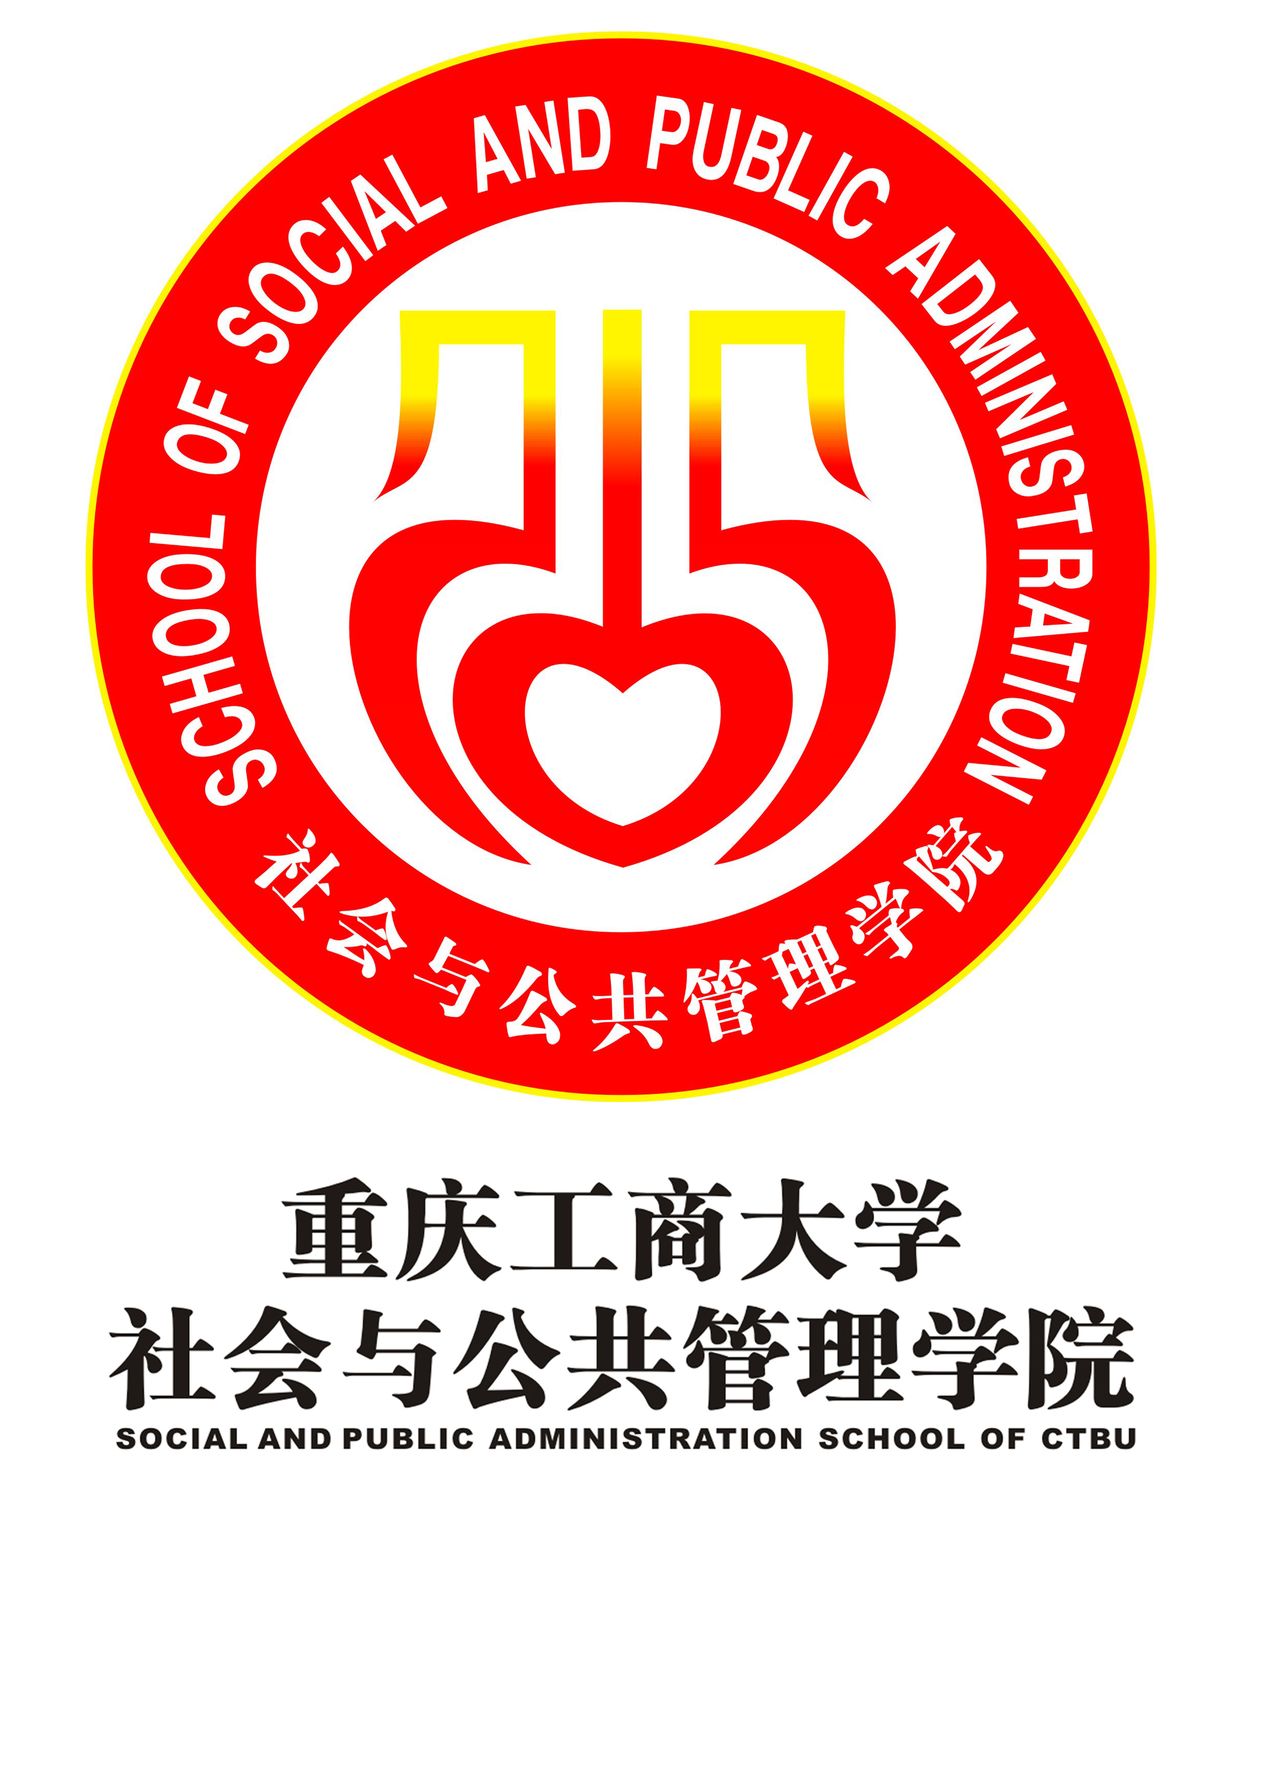 重慶工商大學社會與公共管理學院